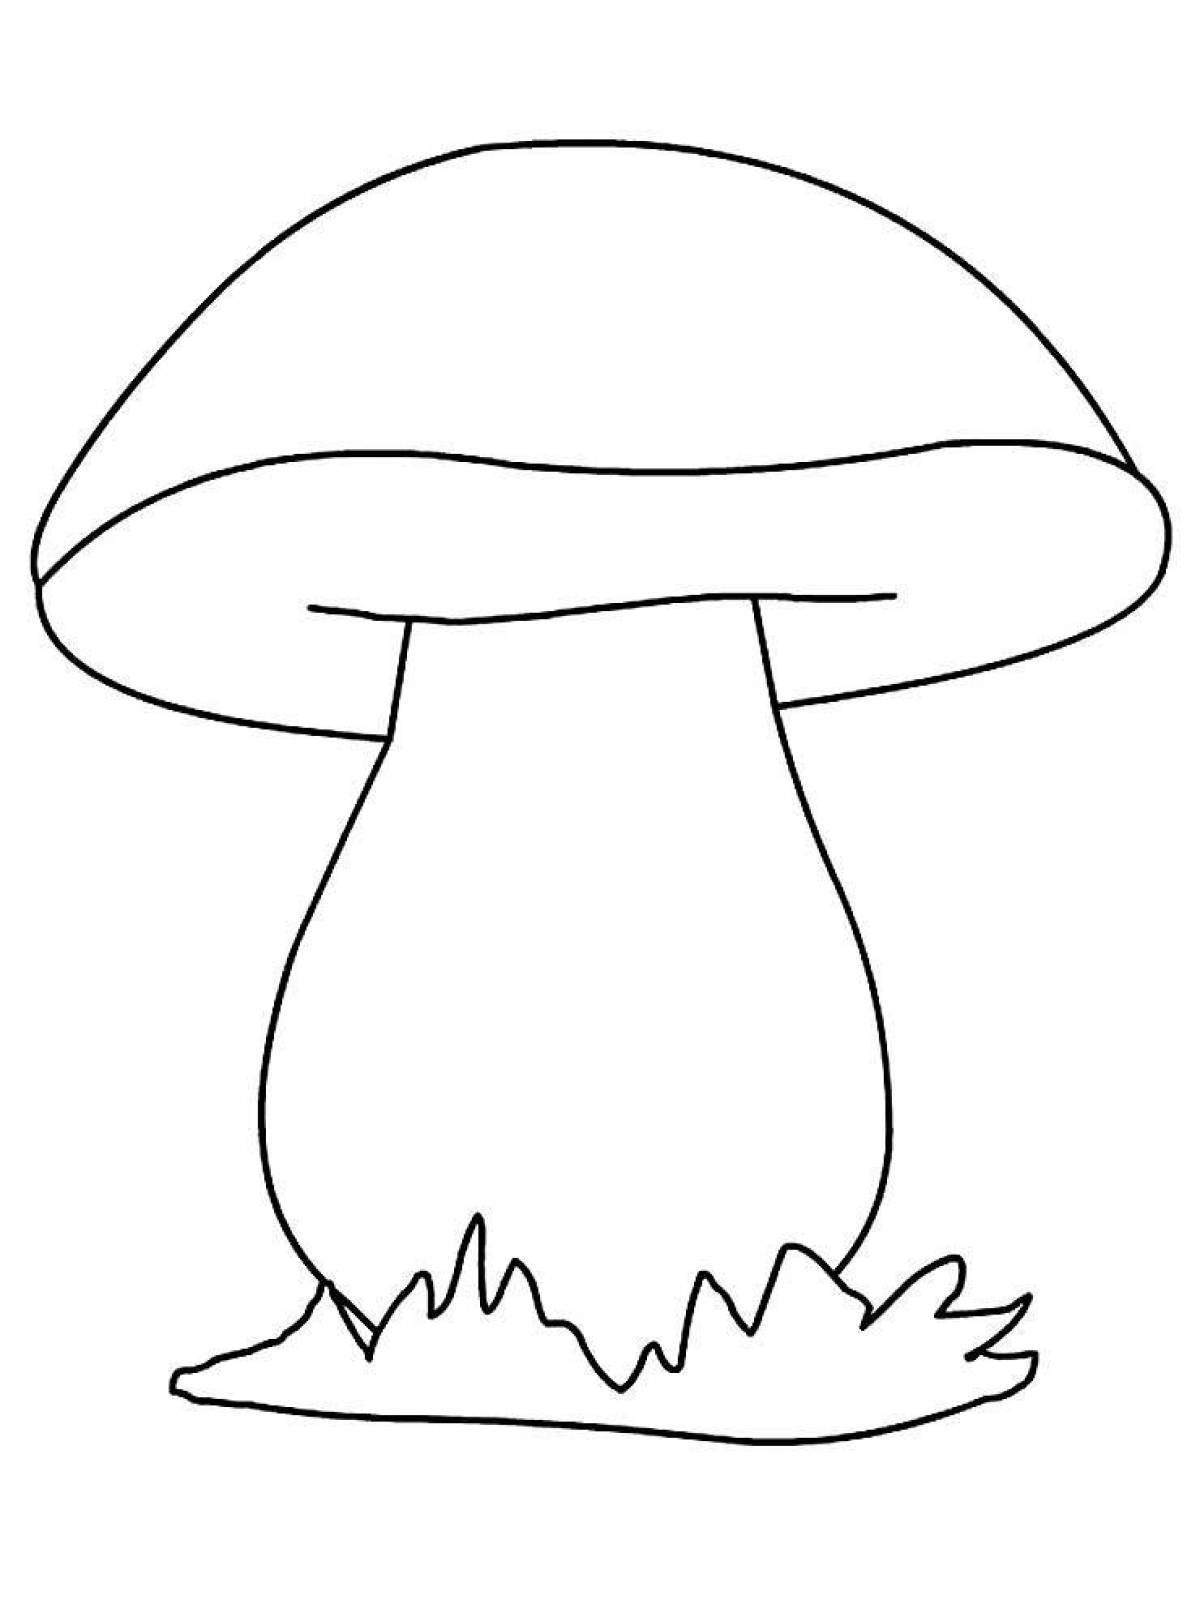 Mushroom coloring book for kids